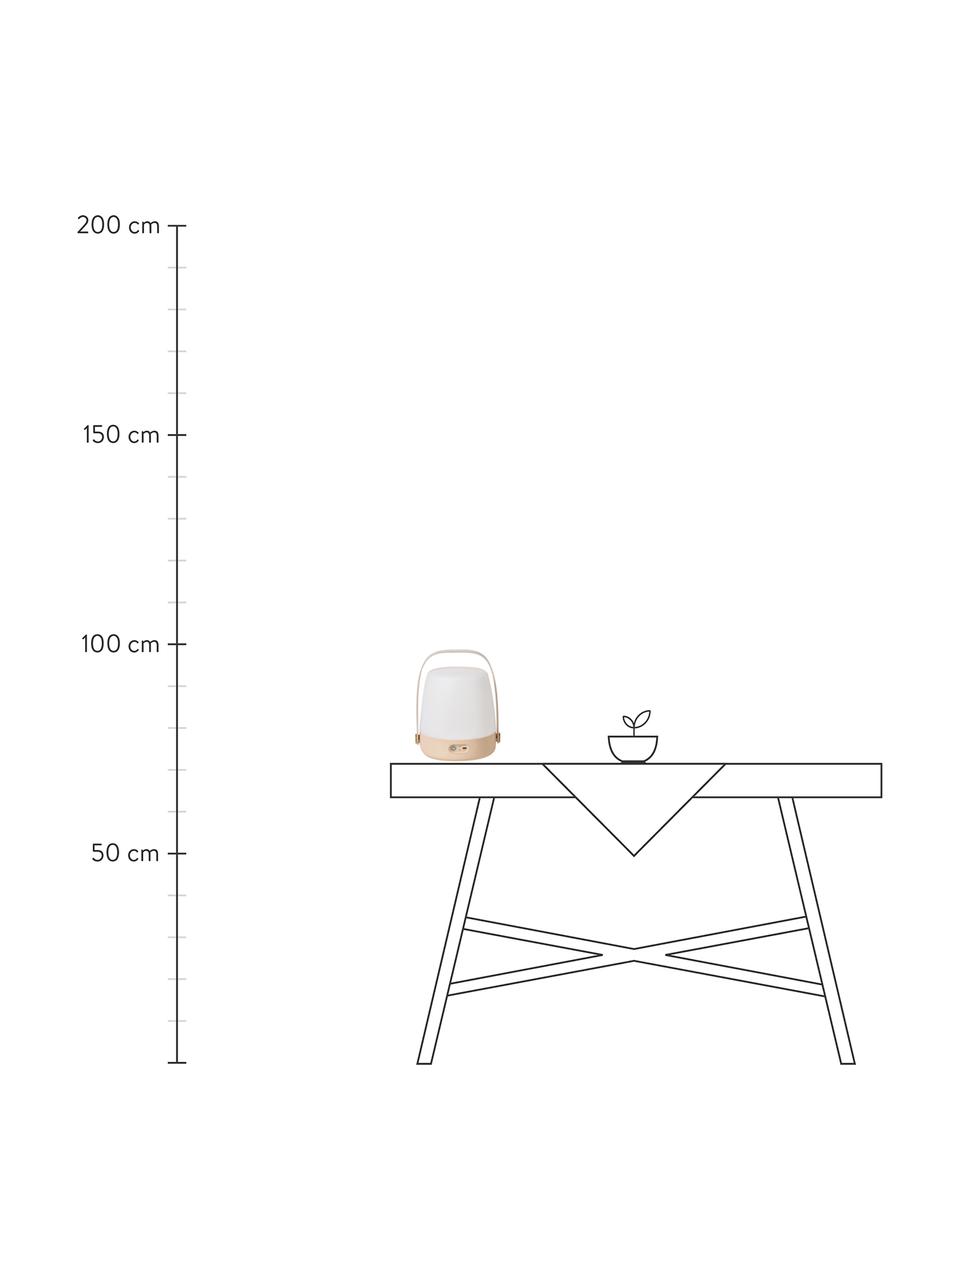 Lámpara de mesa regulable para exterior Lite-up Play, portátil, Pantalla: plástico, Estructura: madera, silicona, Asa: madera, Cable: plástico, Rosa, blanco, beige, Ø 20 x Al 26 cm